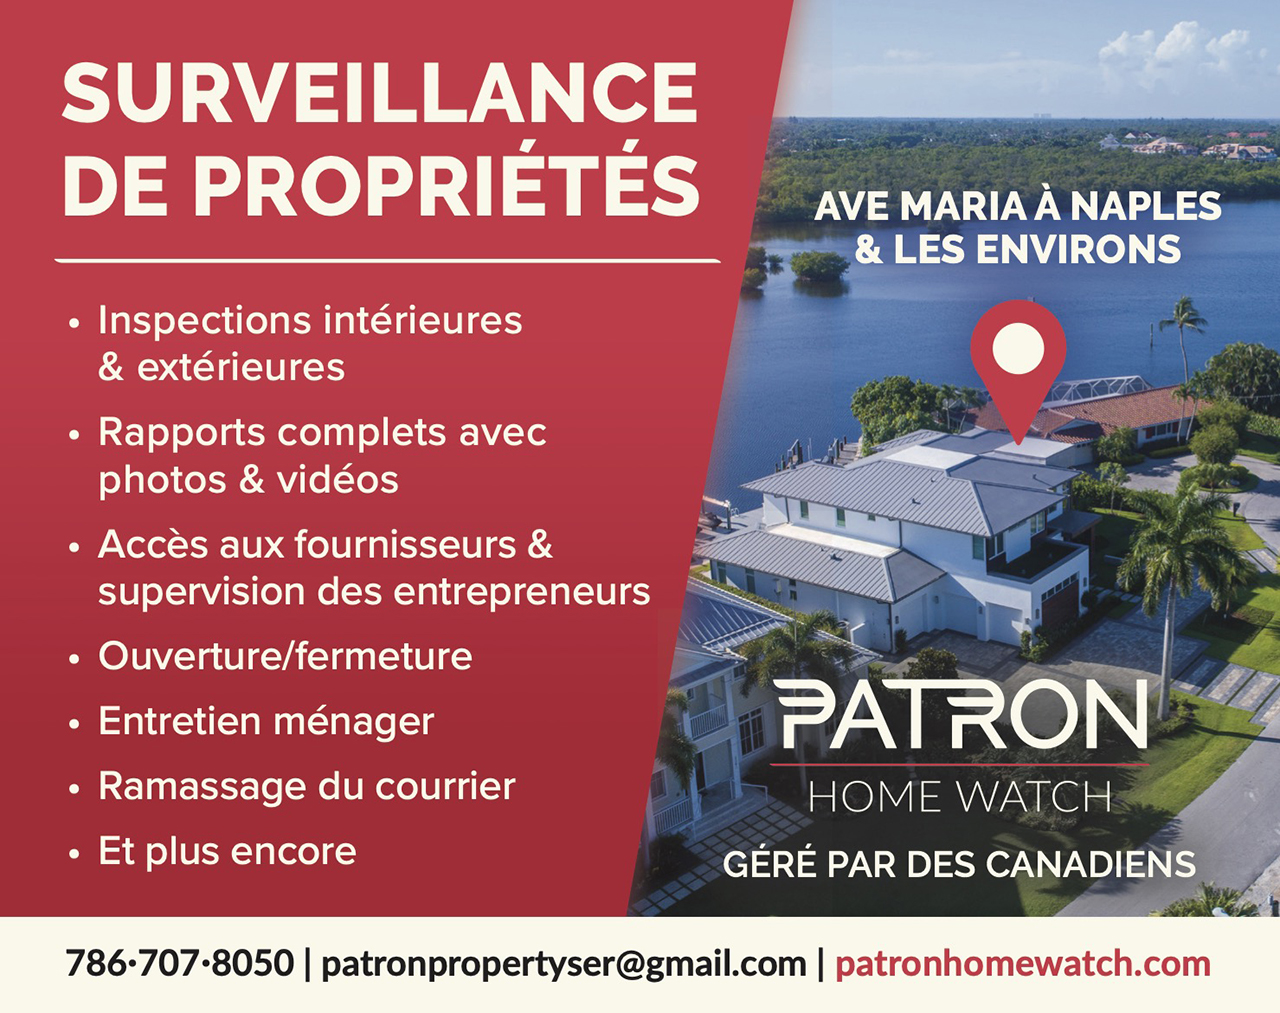 Patron Home Watch Naples surveillance de propriété